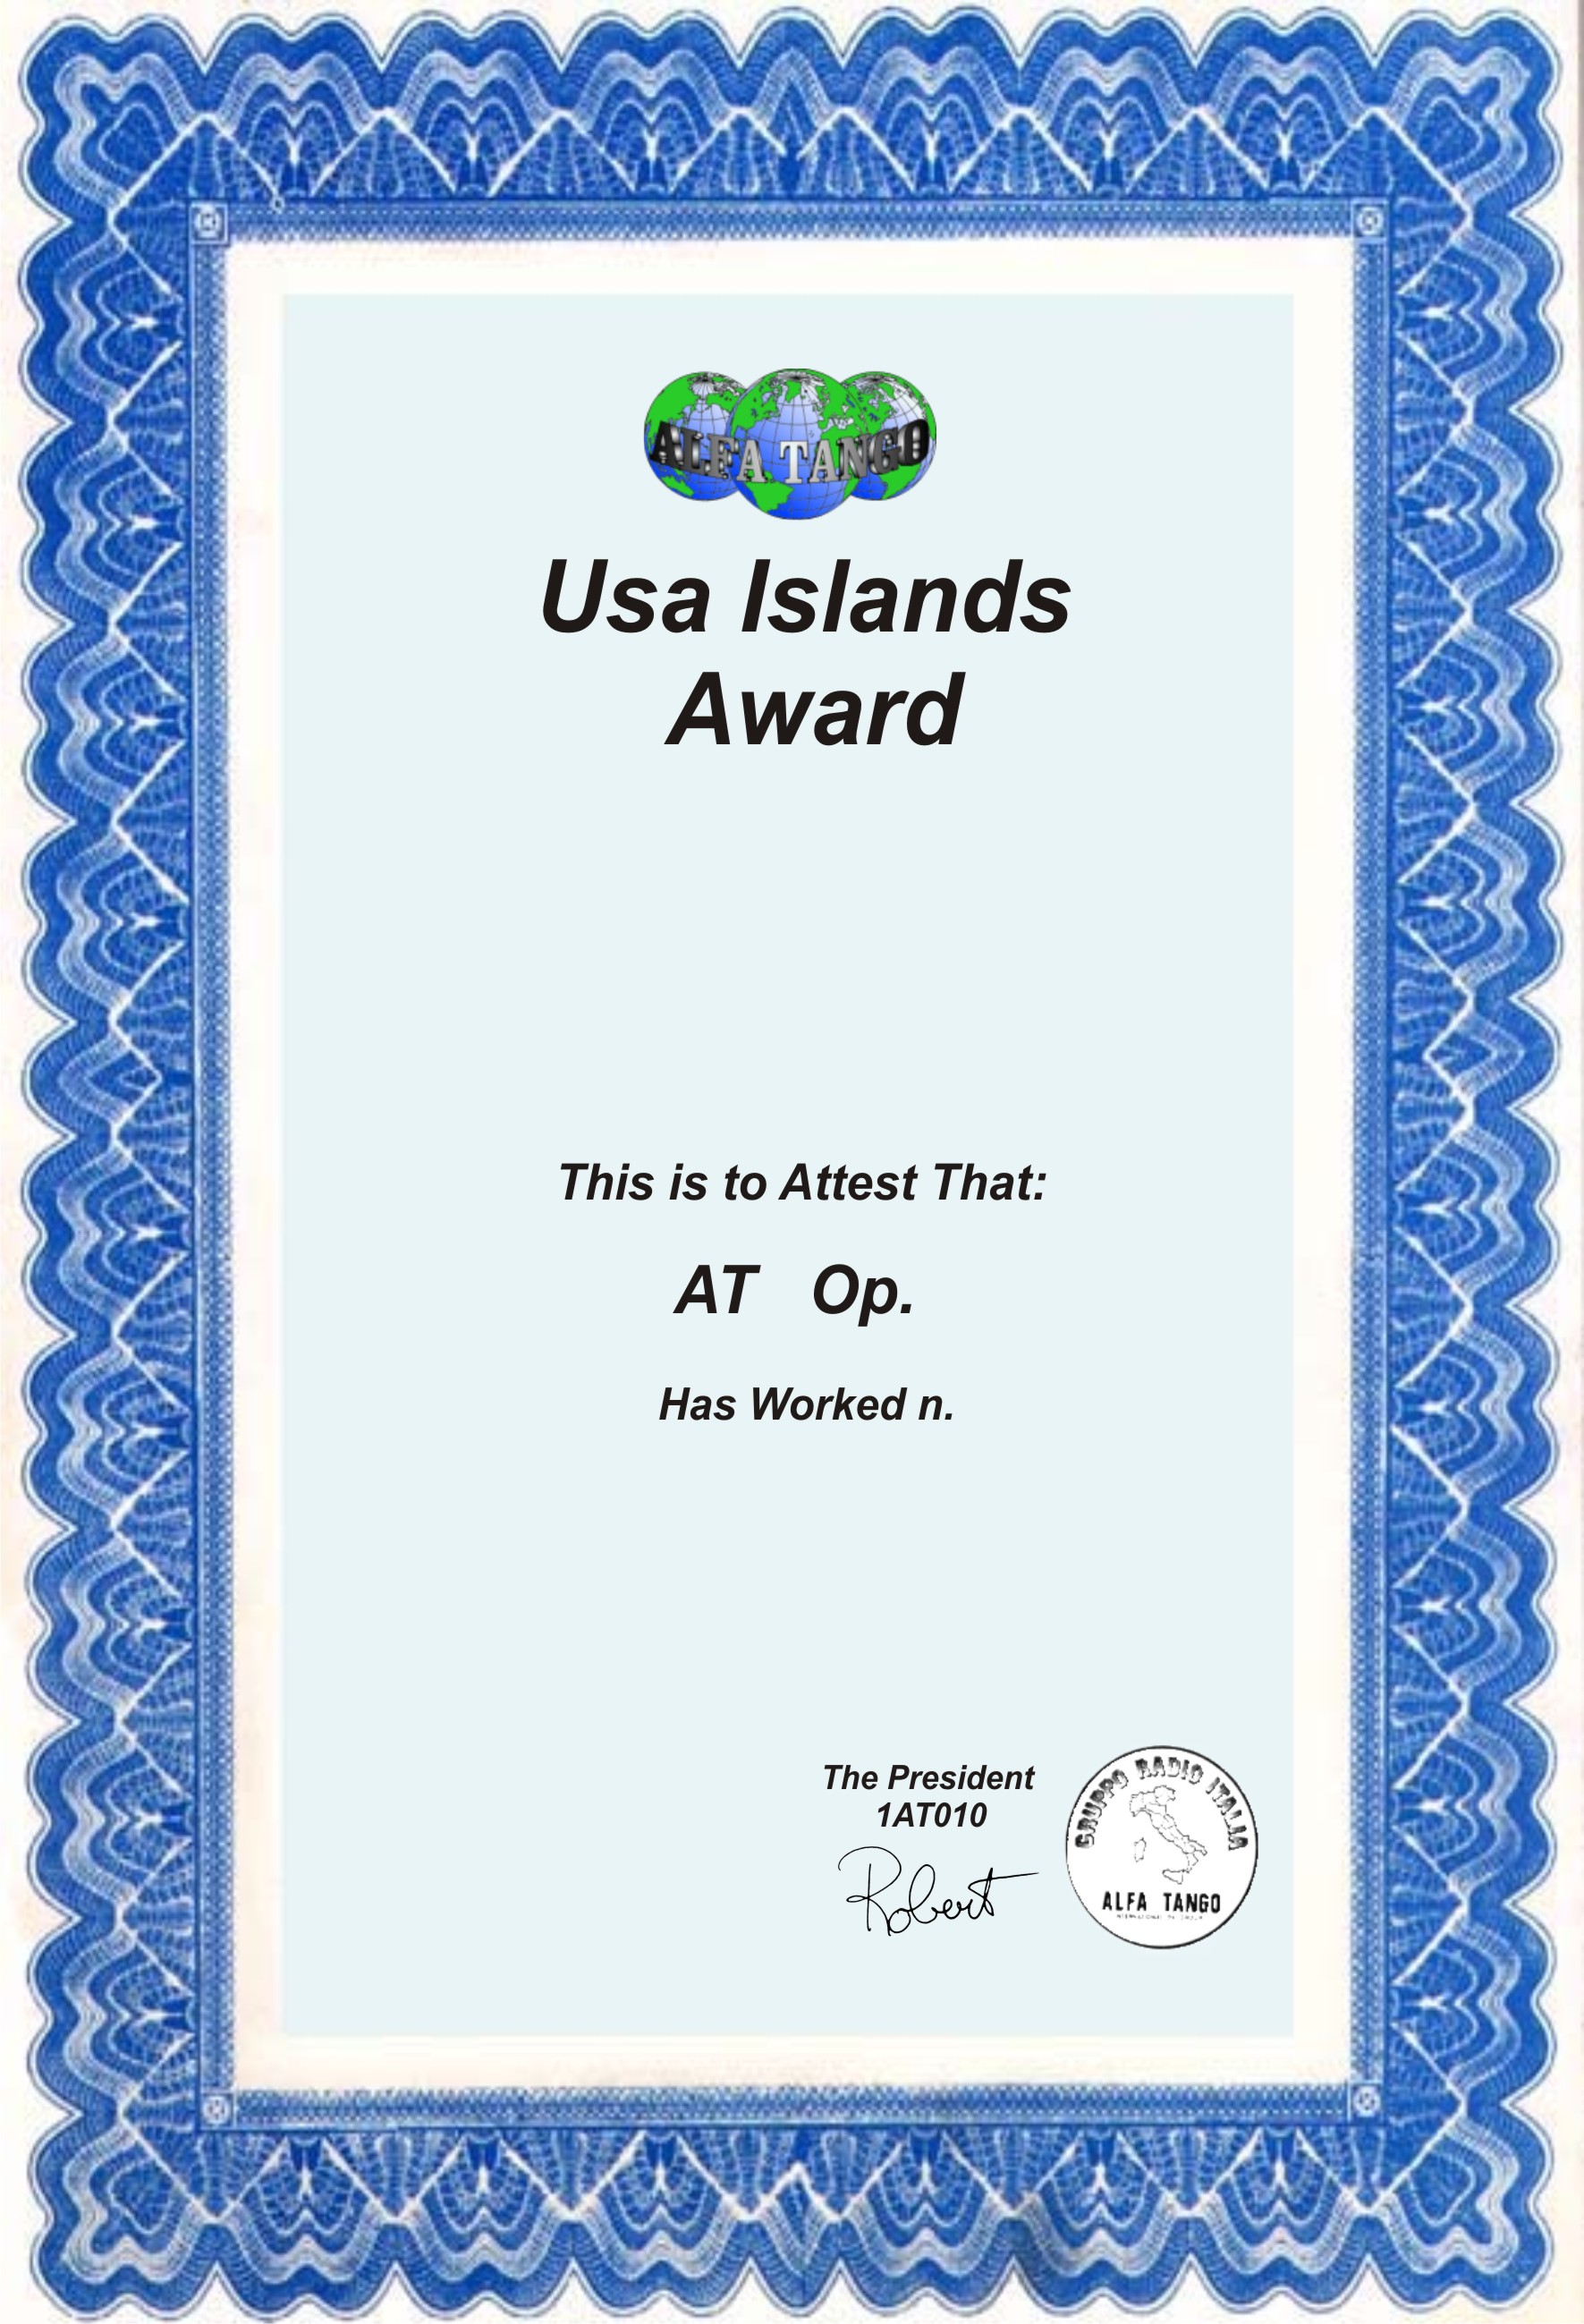 97_Usa_Islands_Award.jpg